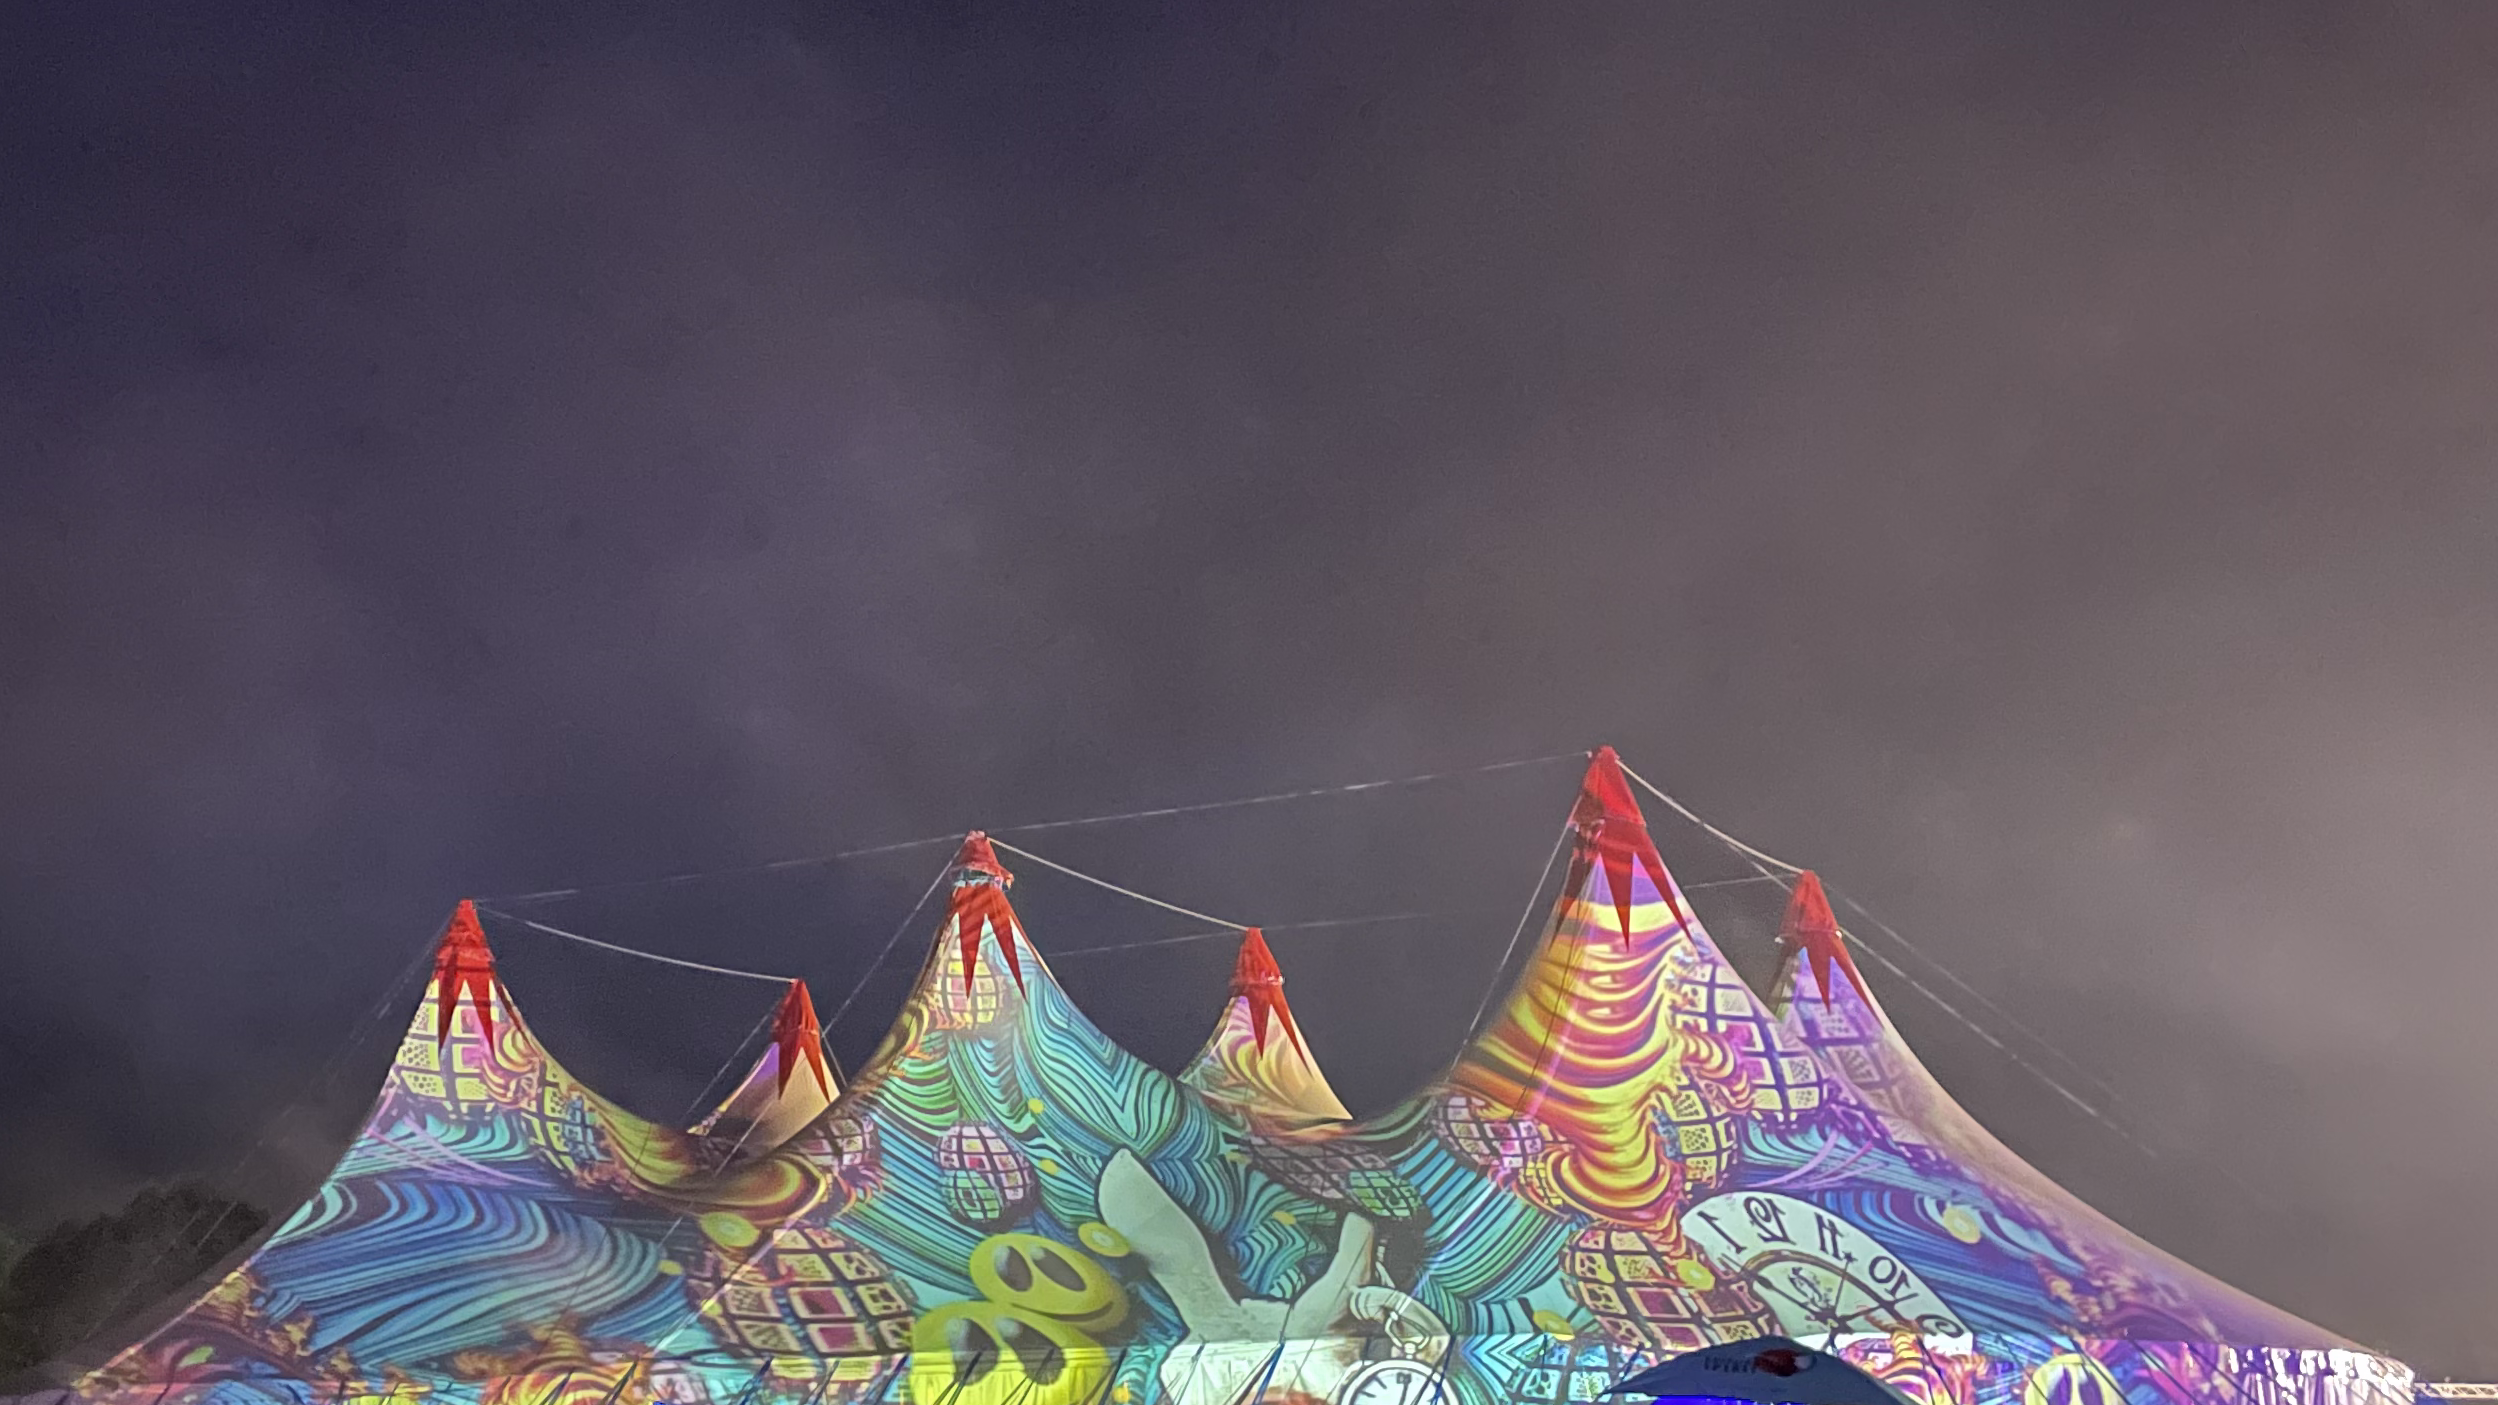 Bild eines Festival-Zelts